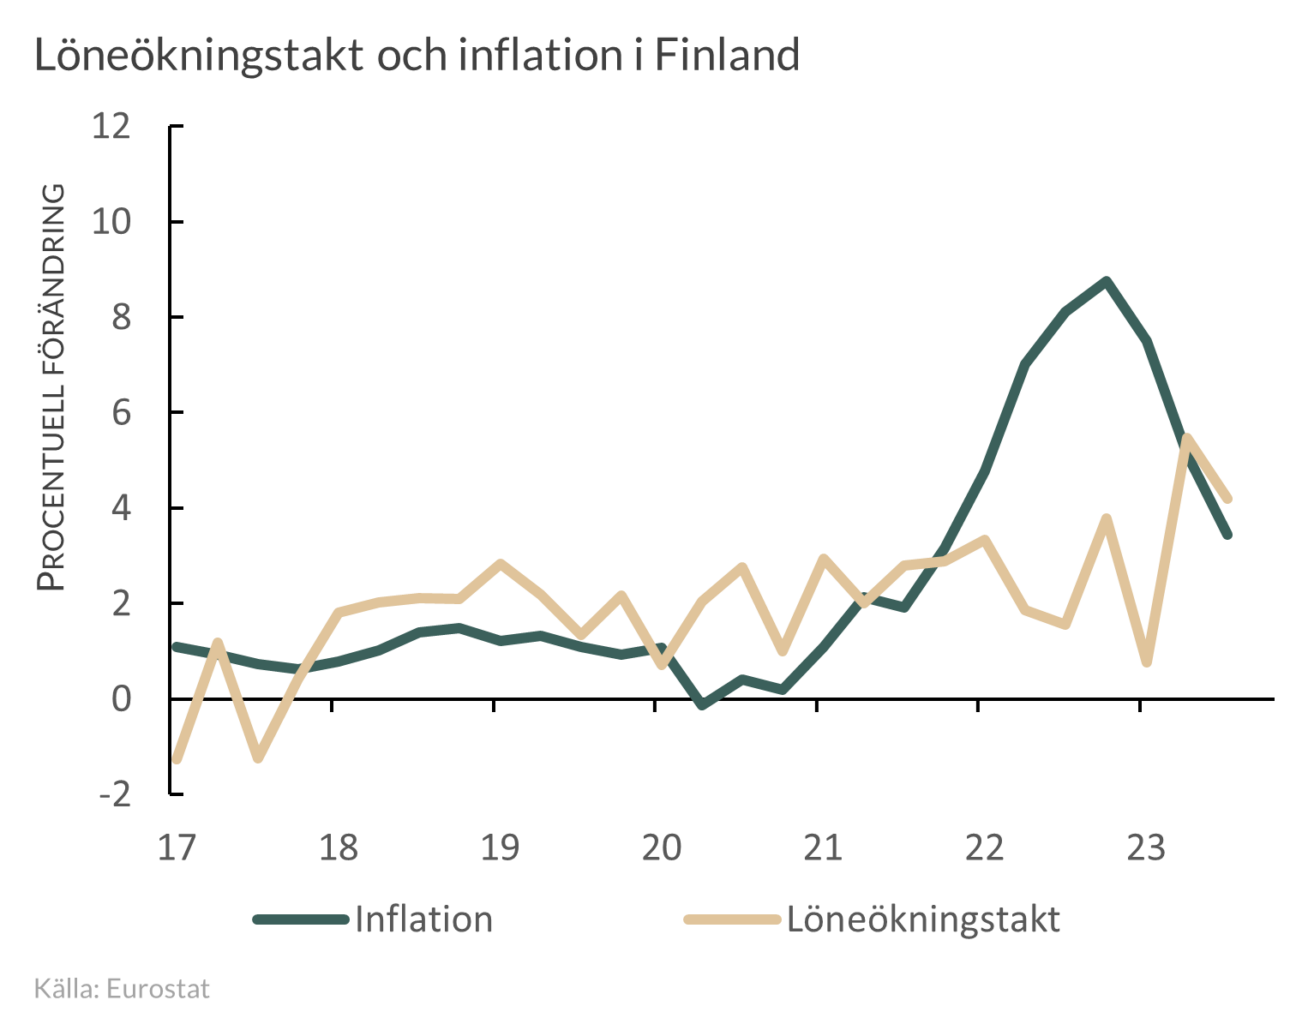 Löne- och inflationsutveckling i Finland  2017-2023